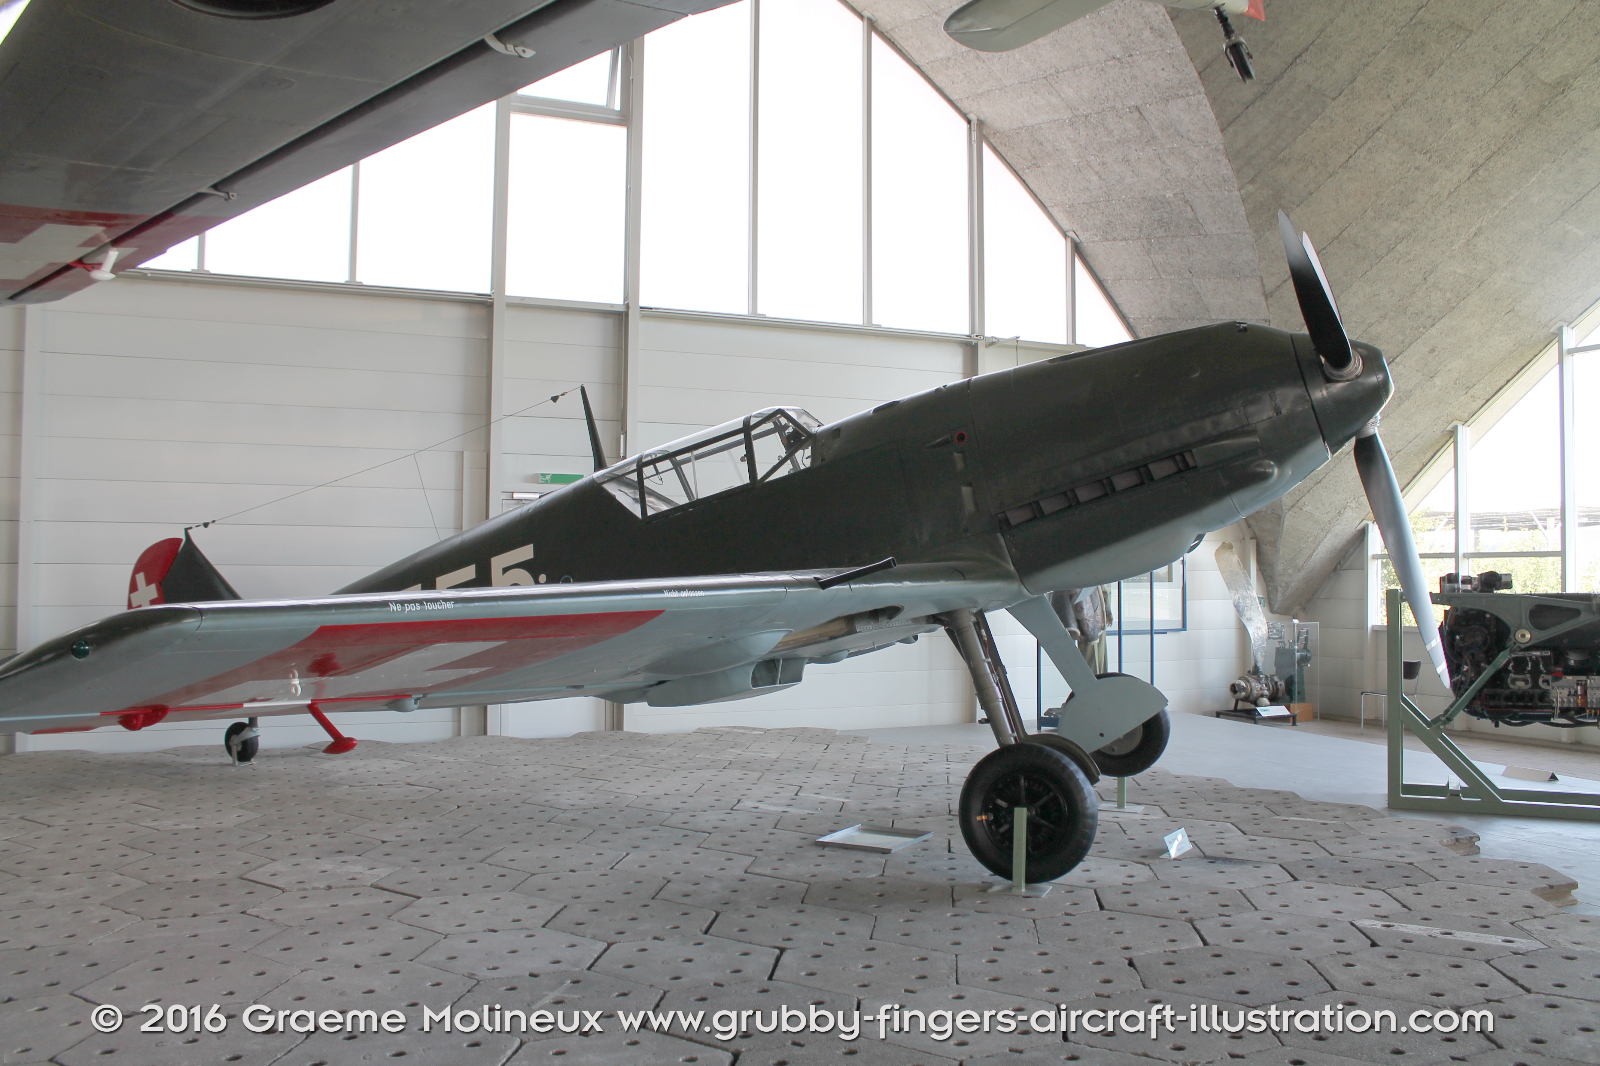 MESSERSCHMITT_BF_109E_J-355_Swiss_Air_Force_Museum_2015_04_GrubbyFingers